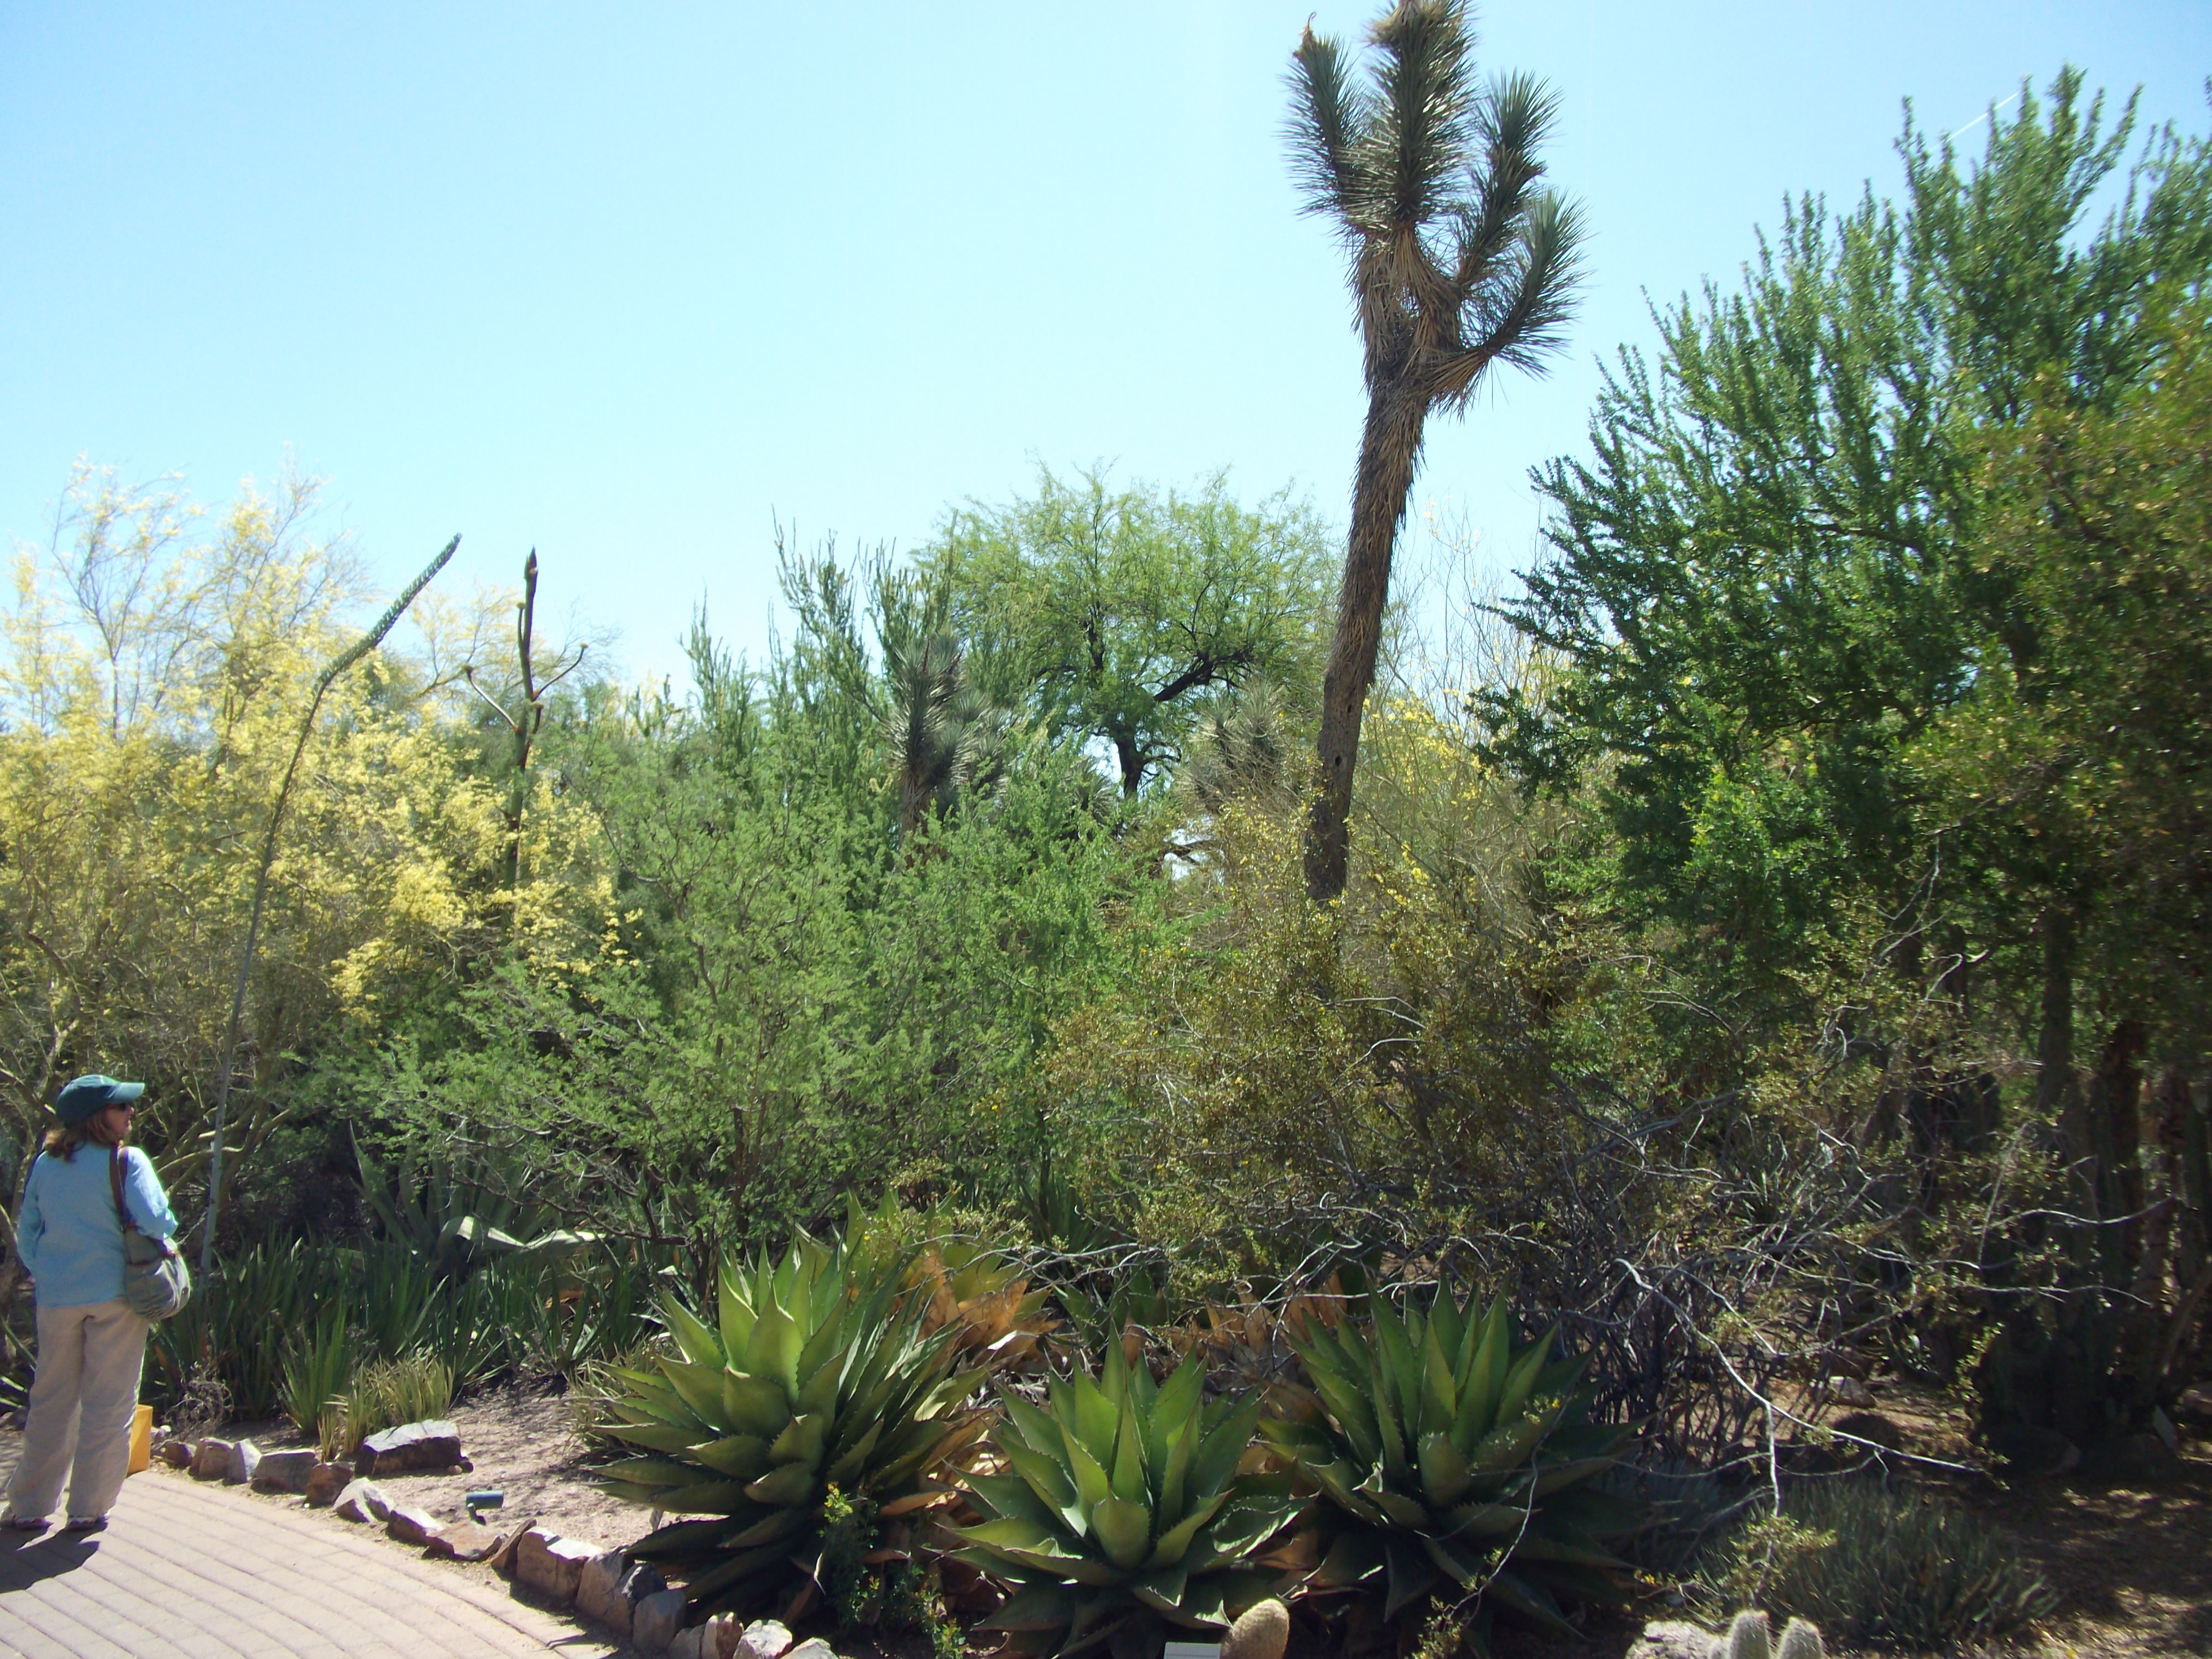 Stange looking Desert Plants in Phoenix's Botanical Garden